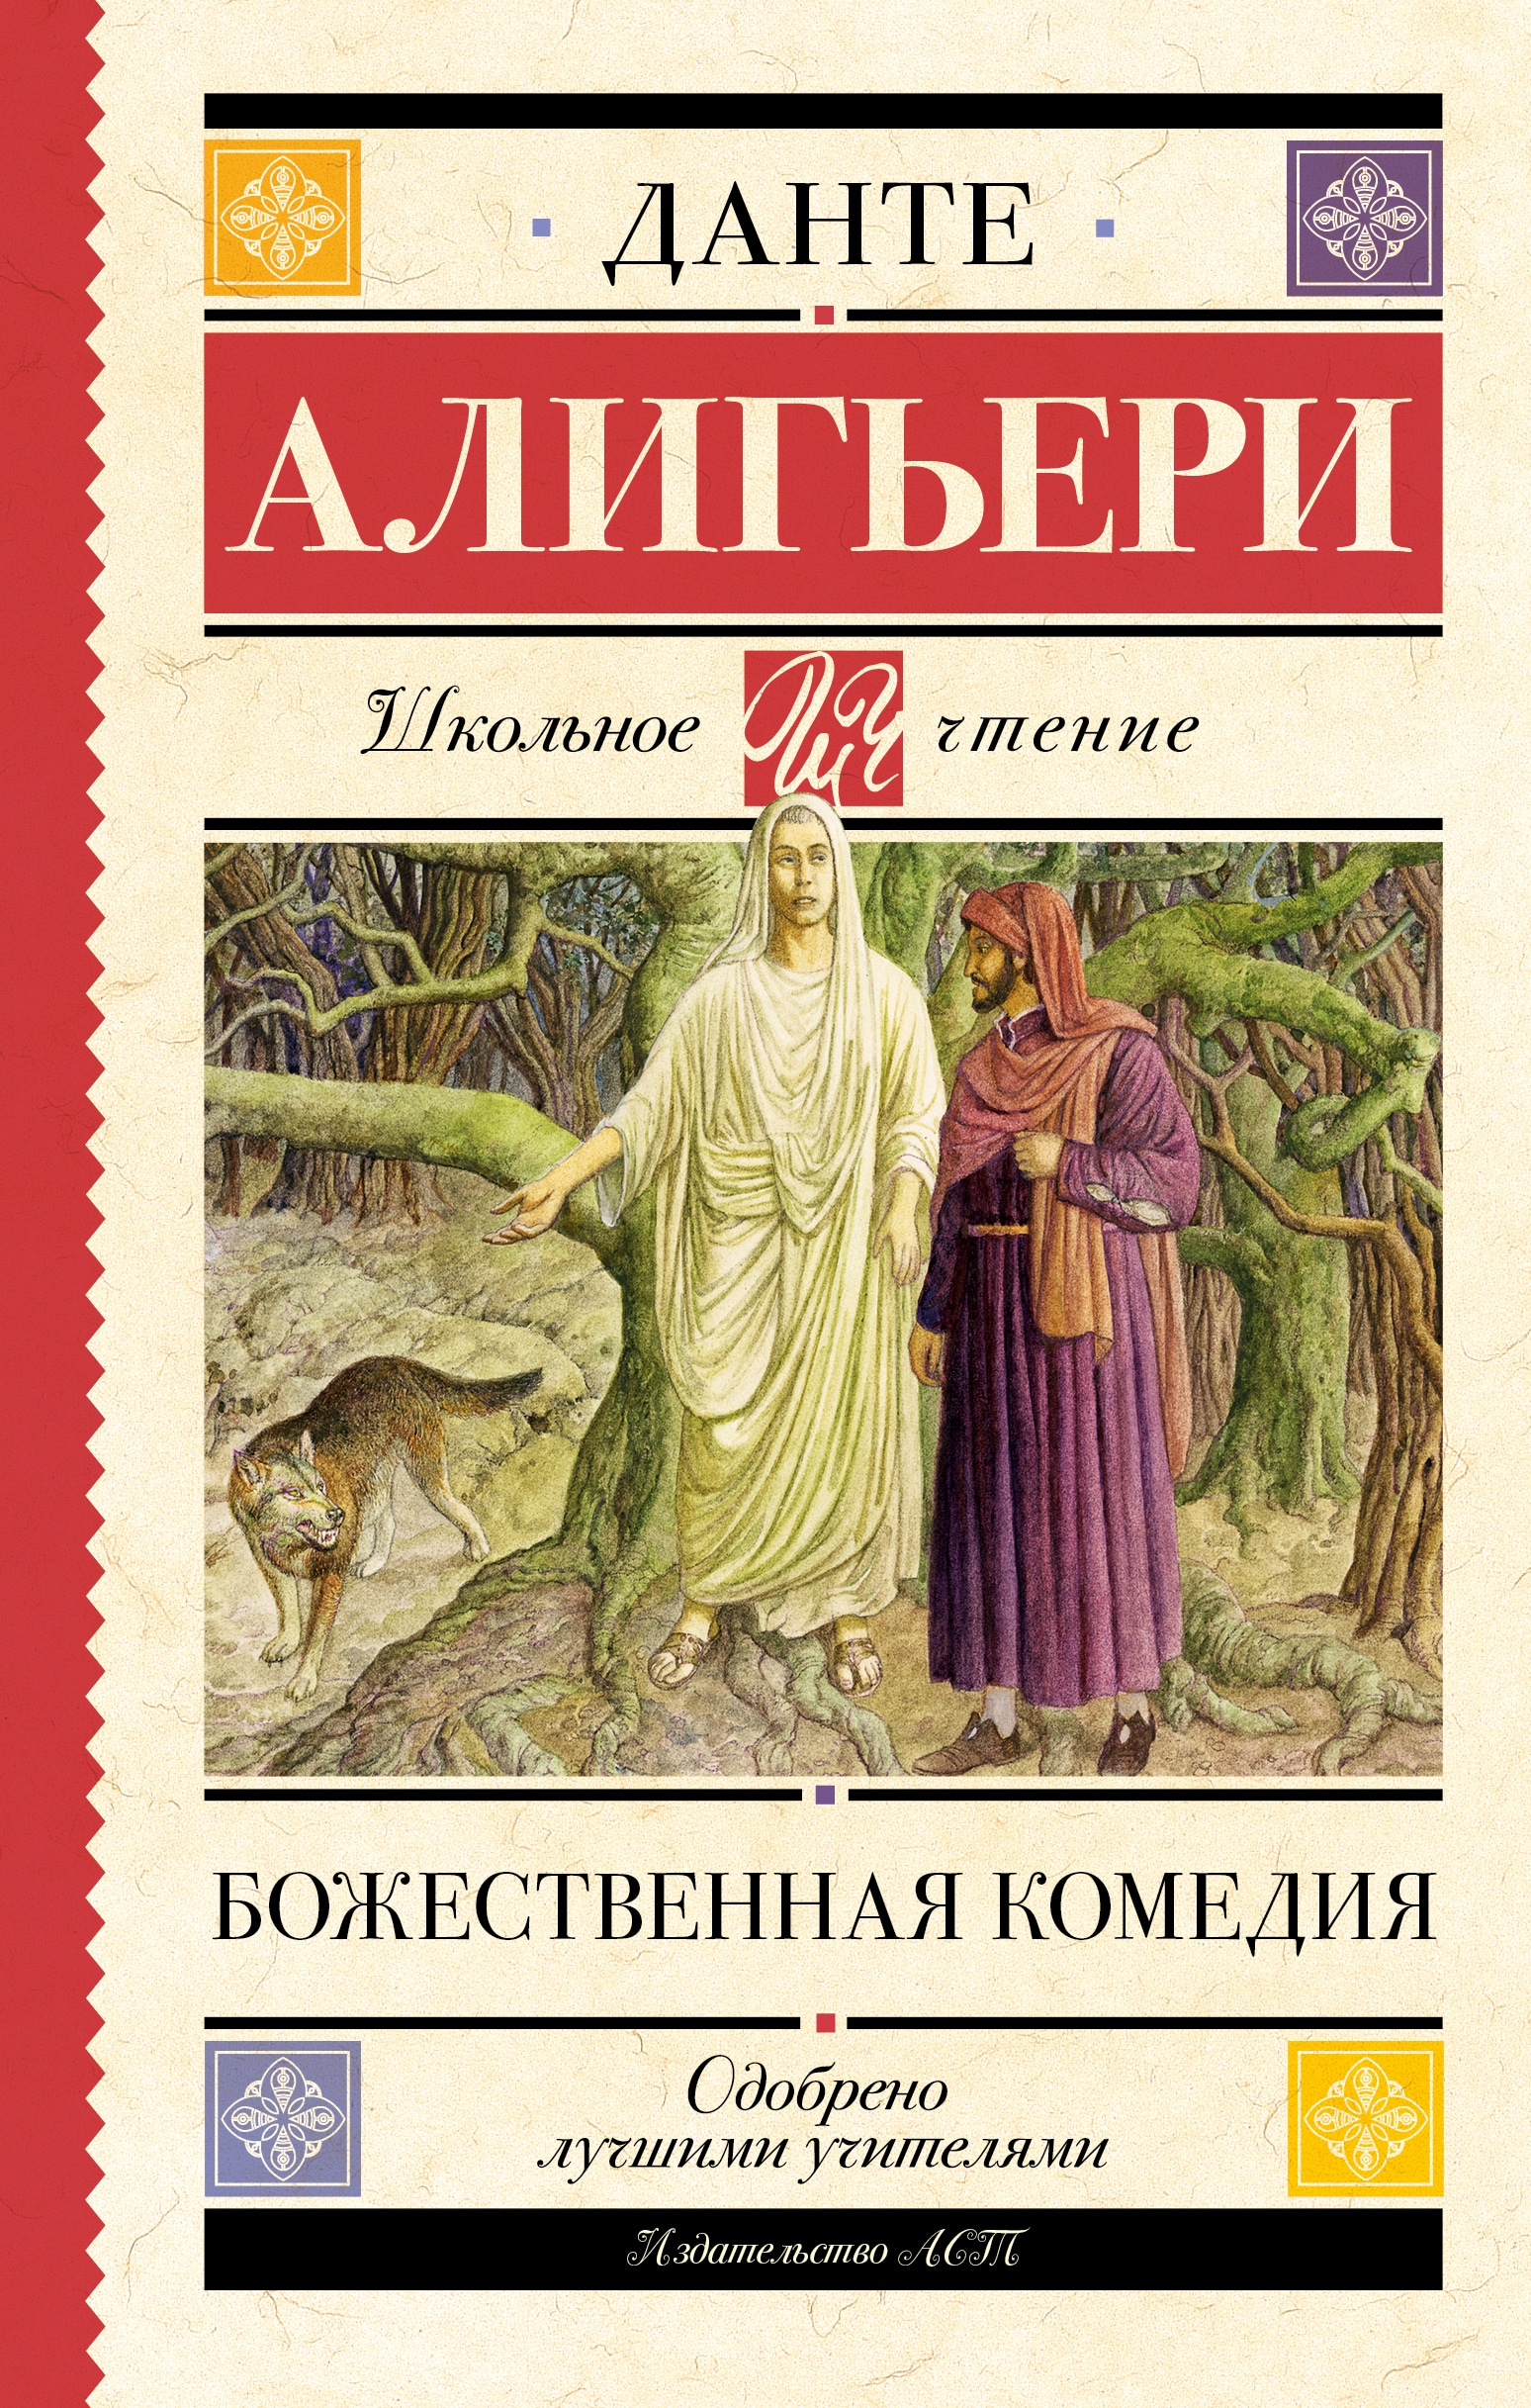 Book “Божественная комедия” by Данте Алигьери — 2023